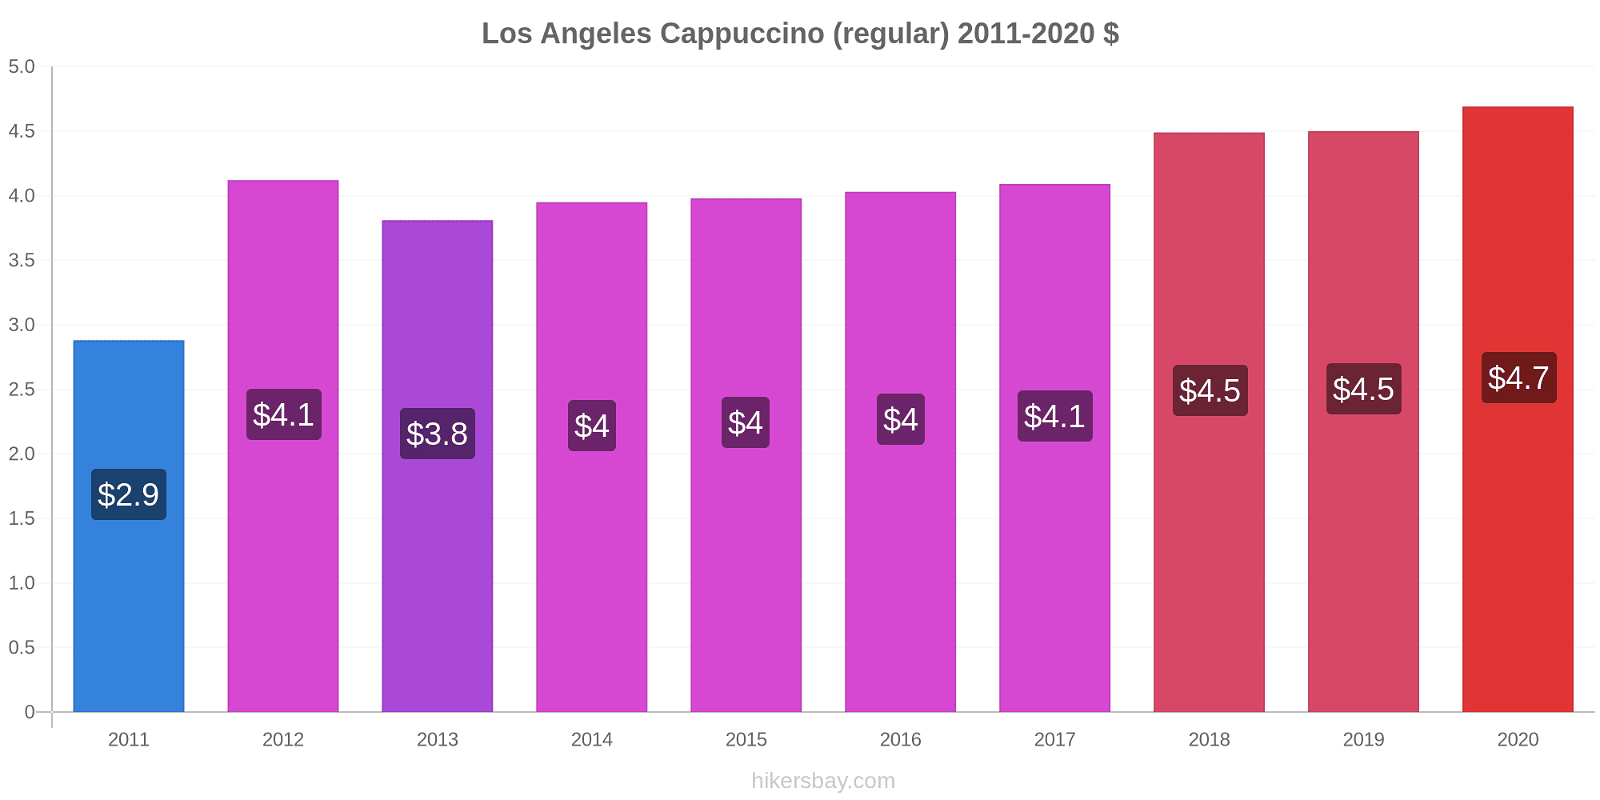 Los Angeles price changes Cappuccino (regular) hikersbay.com